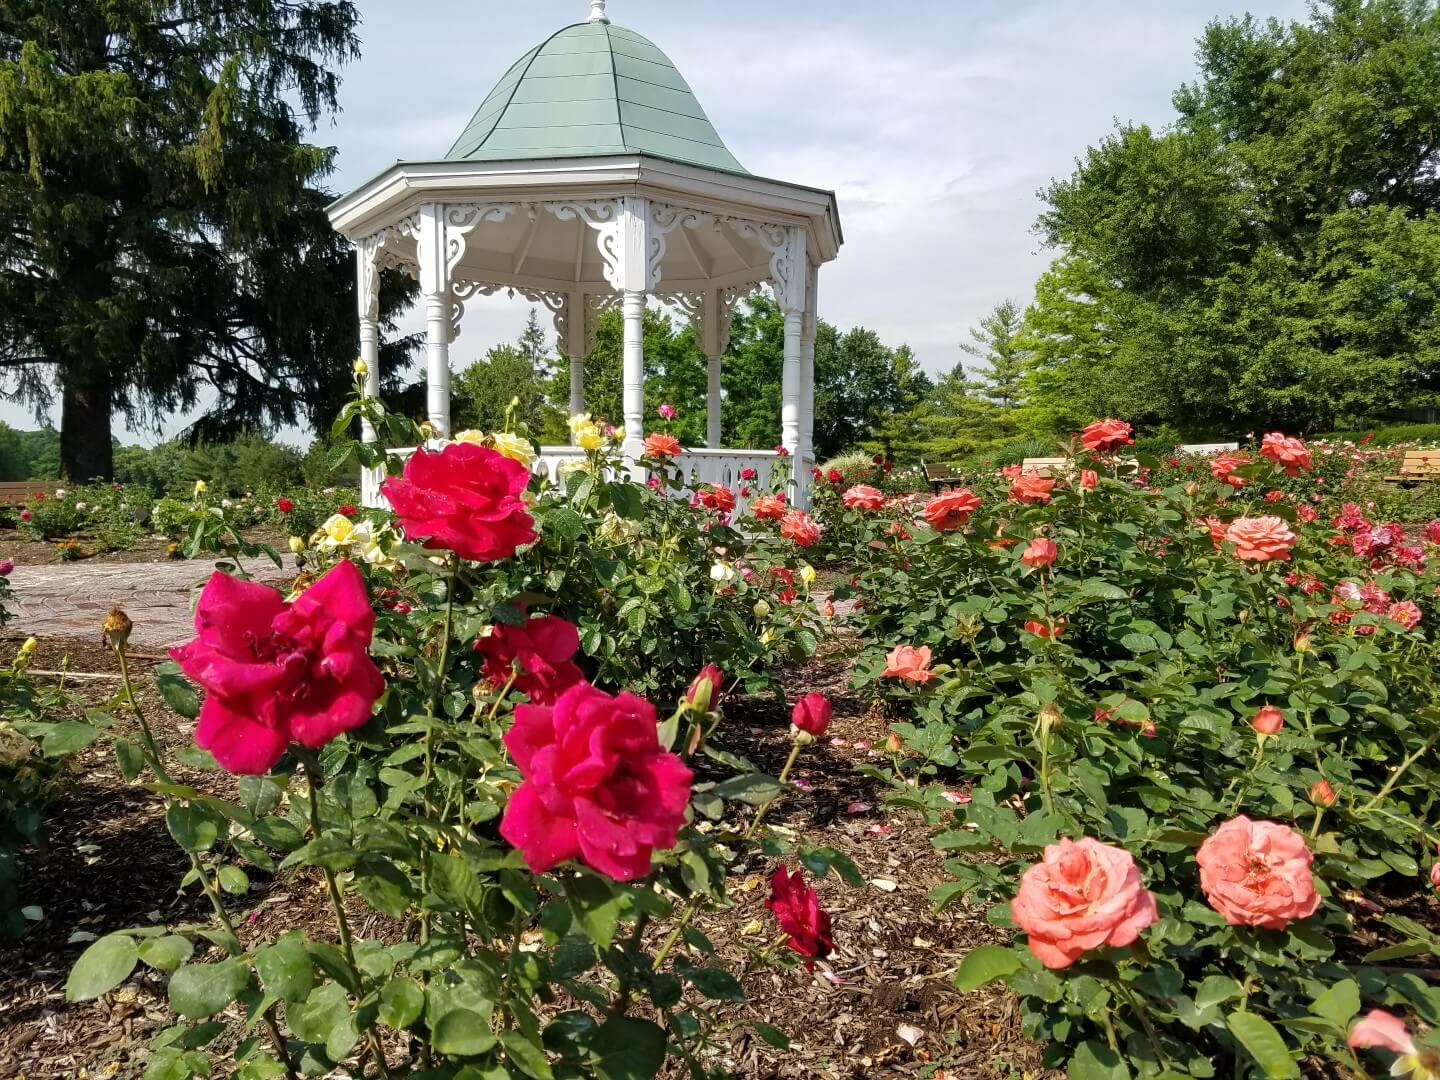 Any rose lover will adore this beautiful rose garden. - richmondrosegarden